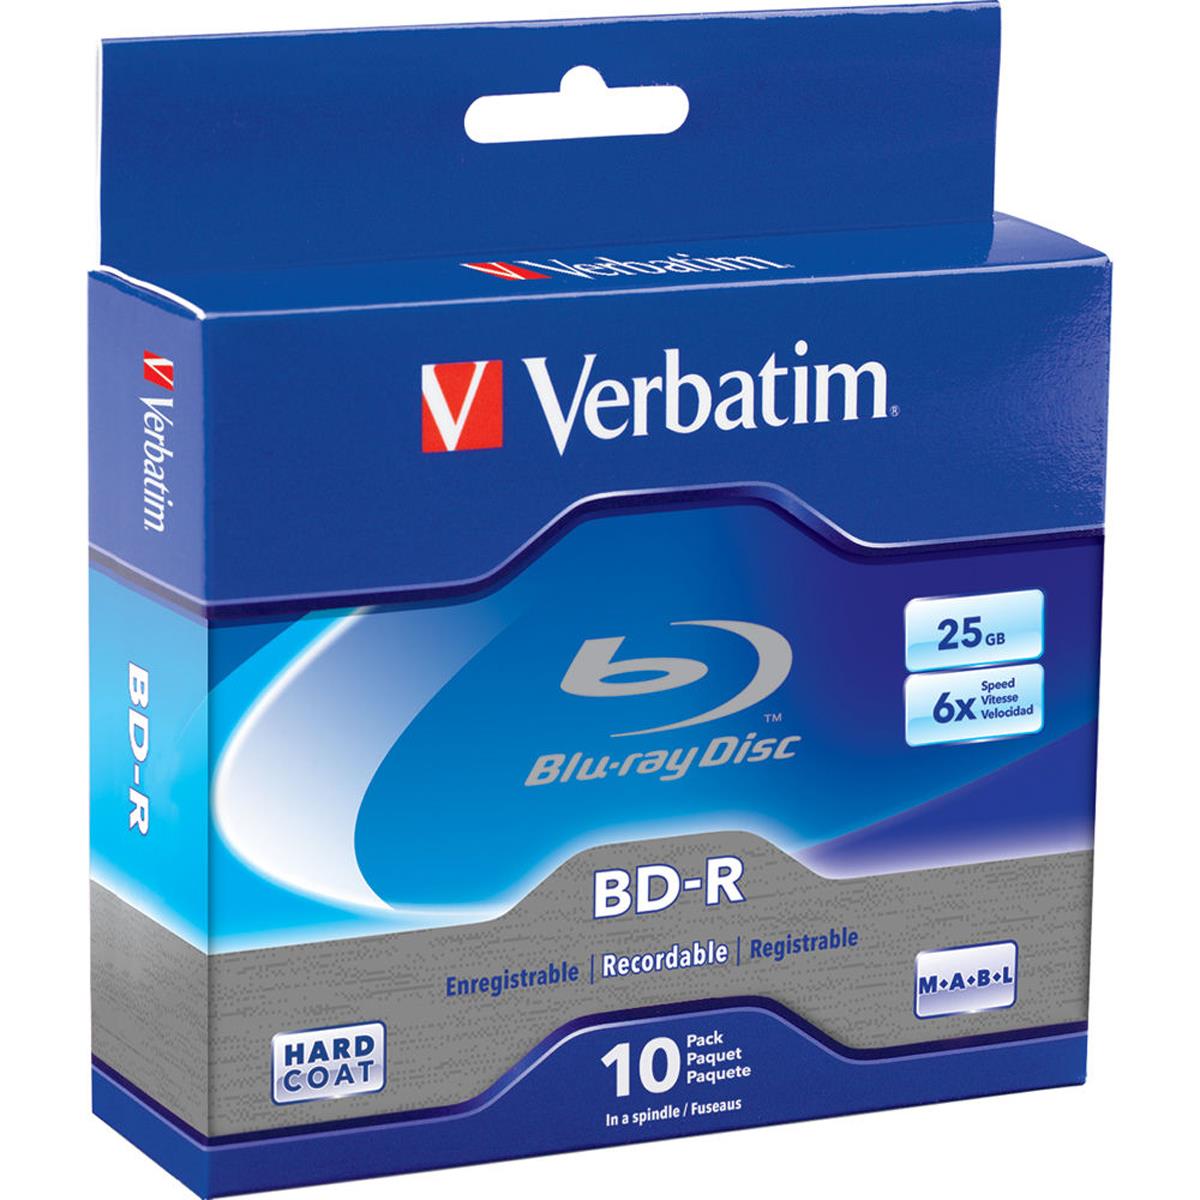 Image of Verbatim Blu-ray Disc